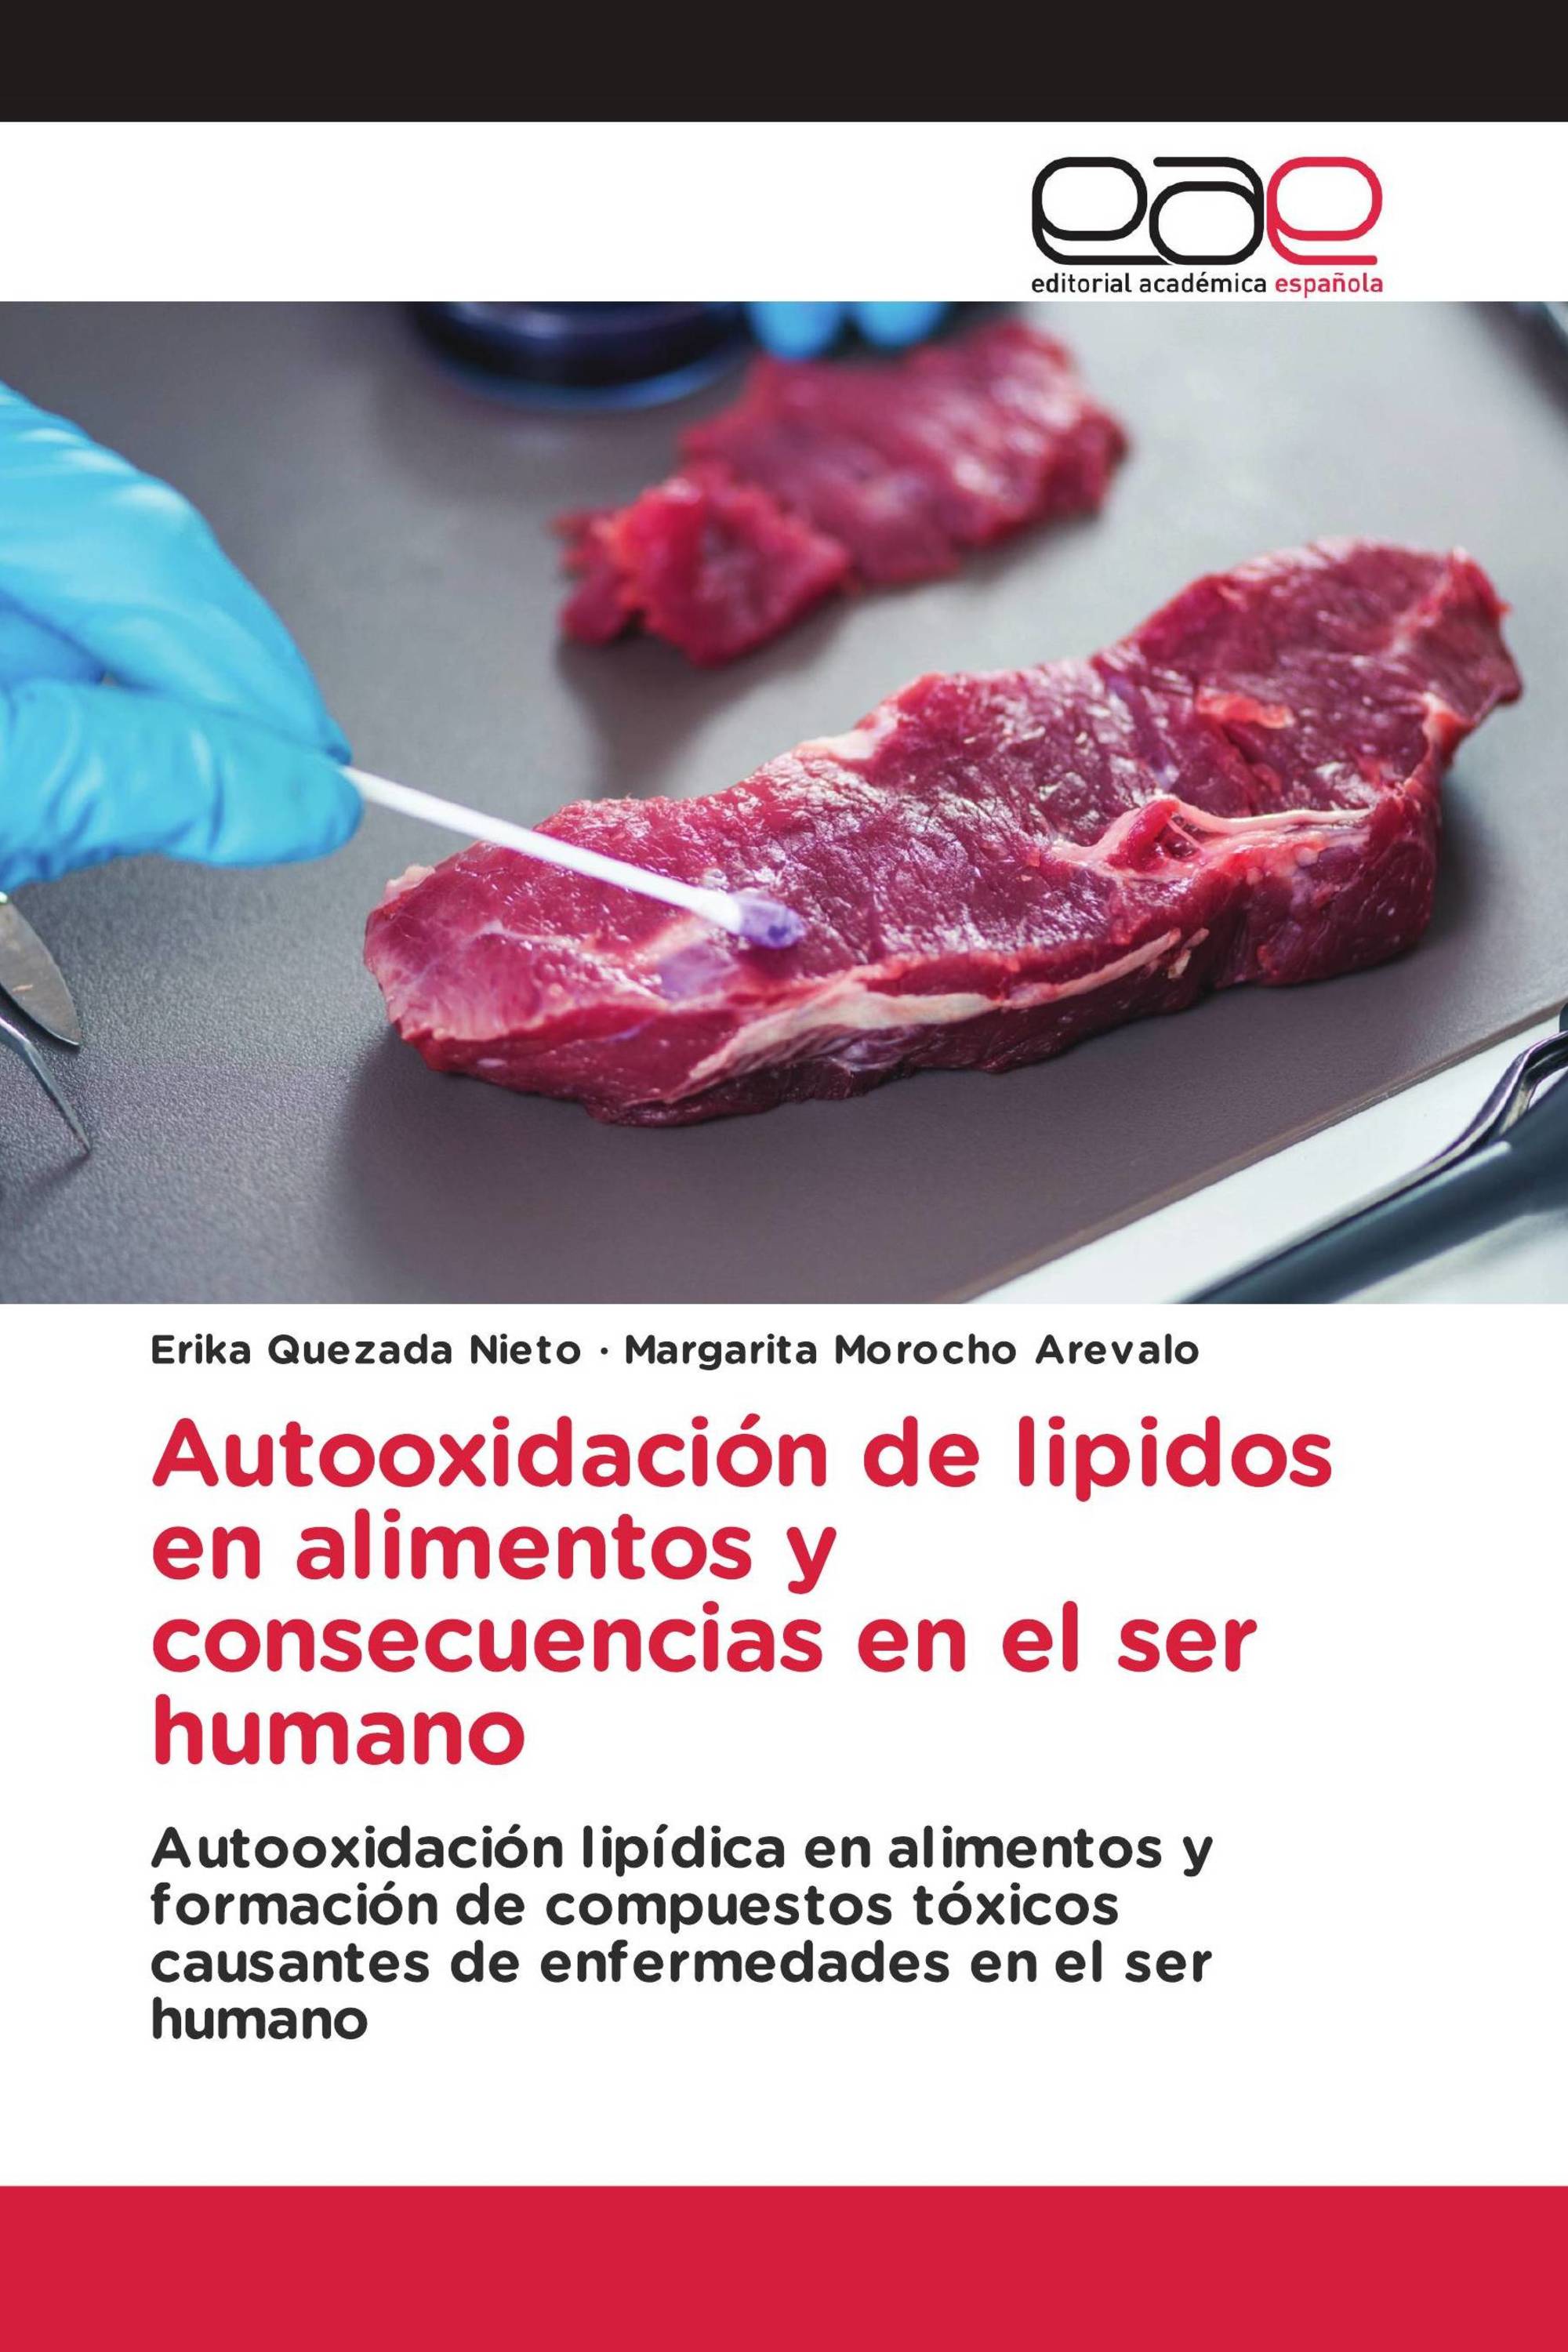 Autooxidación de lipidos en alimentos y consecuencias en el ser humano